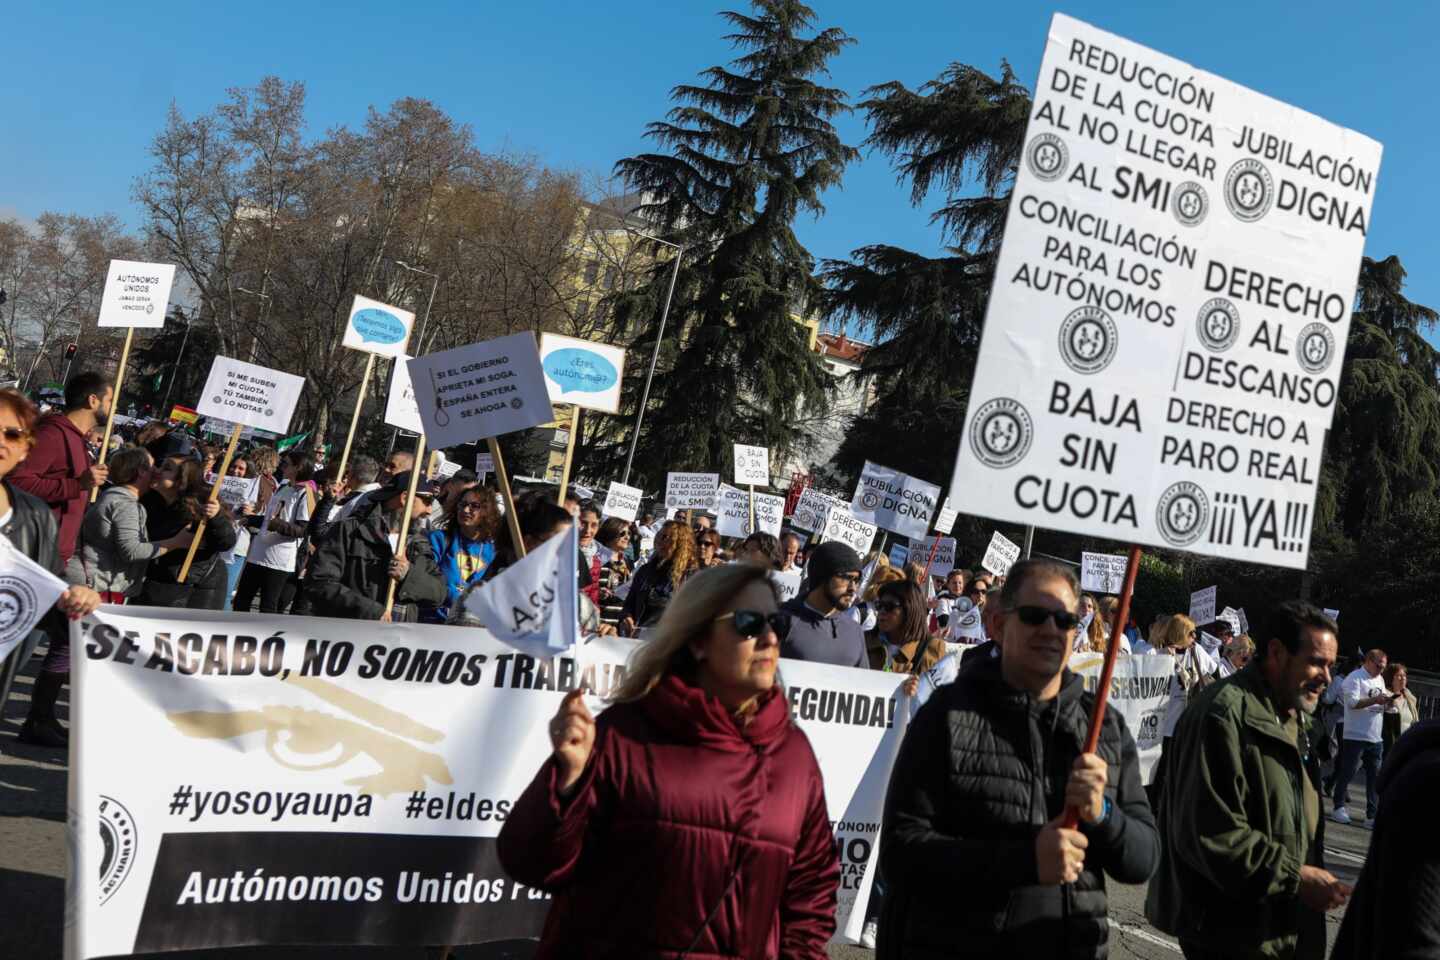 Los autónomos claman en Madrid por sus derechos: "Que nos den lo que nos corresponde"